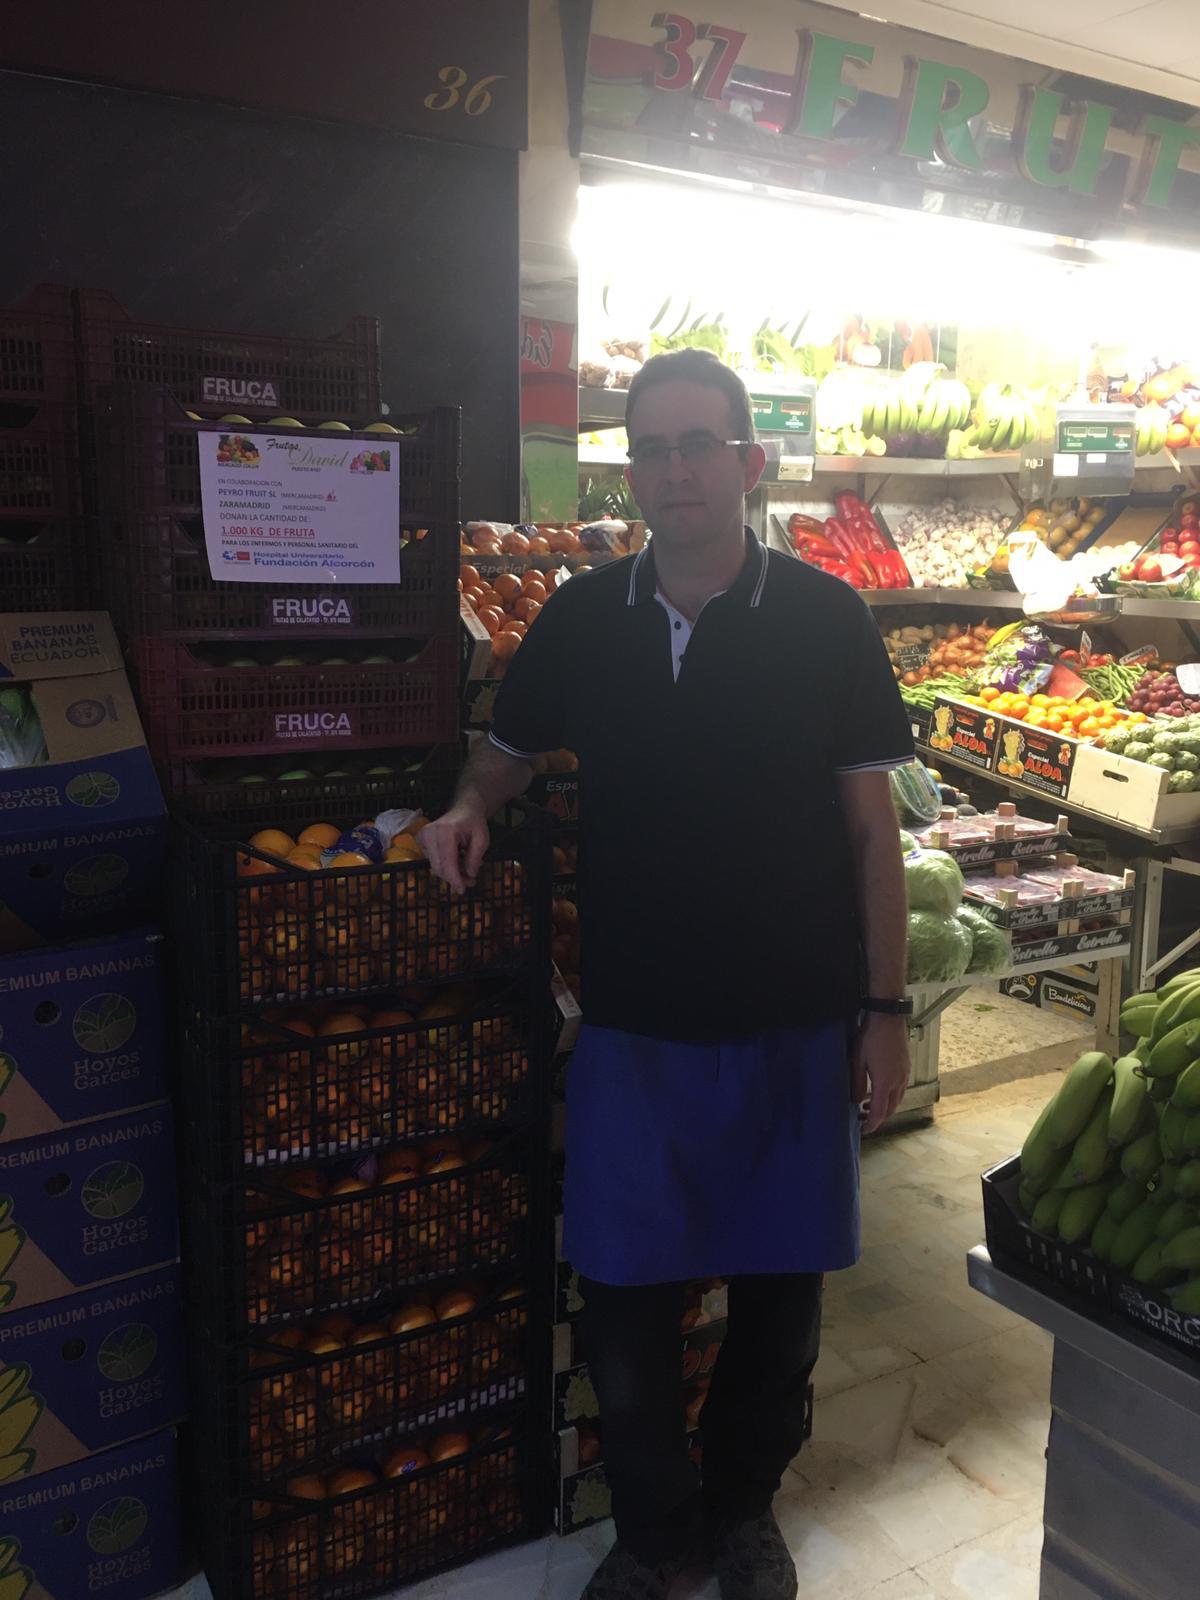 Frutas David dona 1.000 kilos de fruta al Hospital Fundación Alcorcón